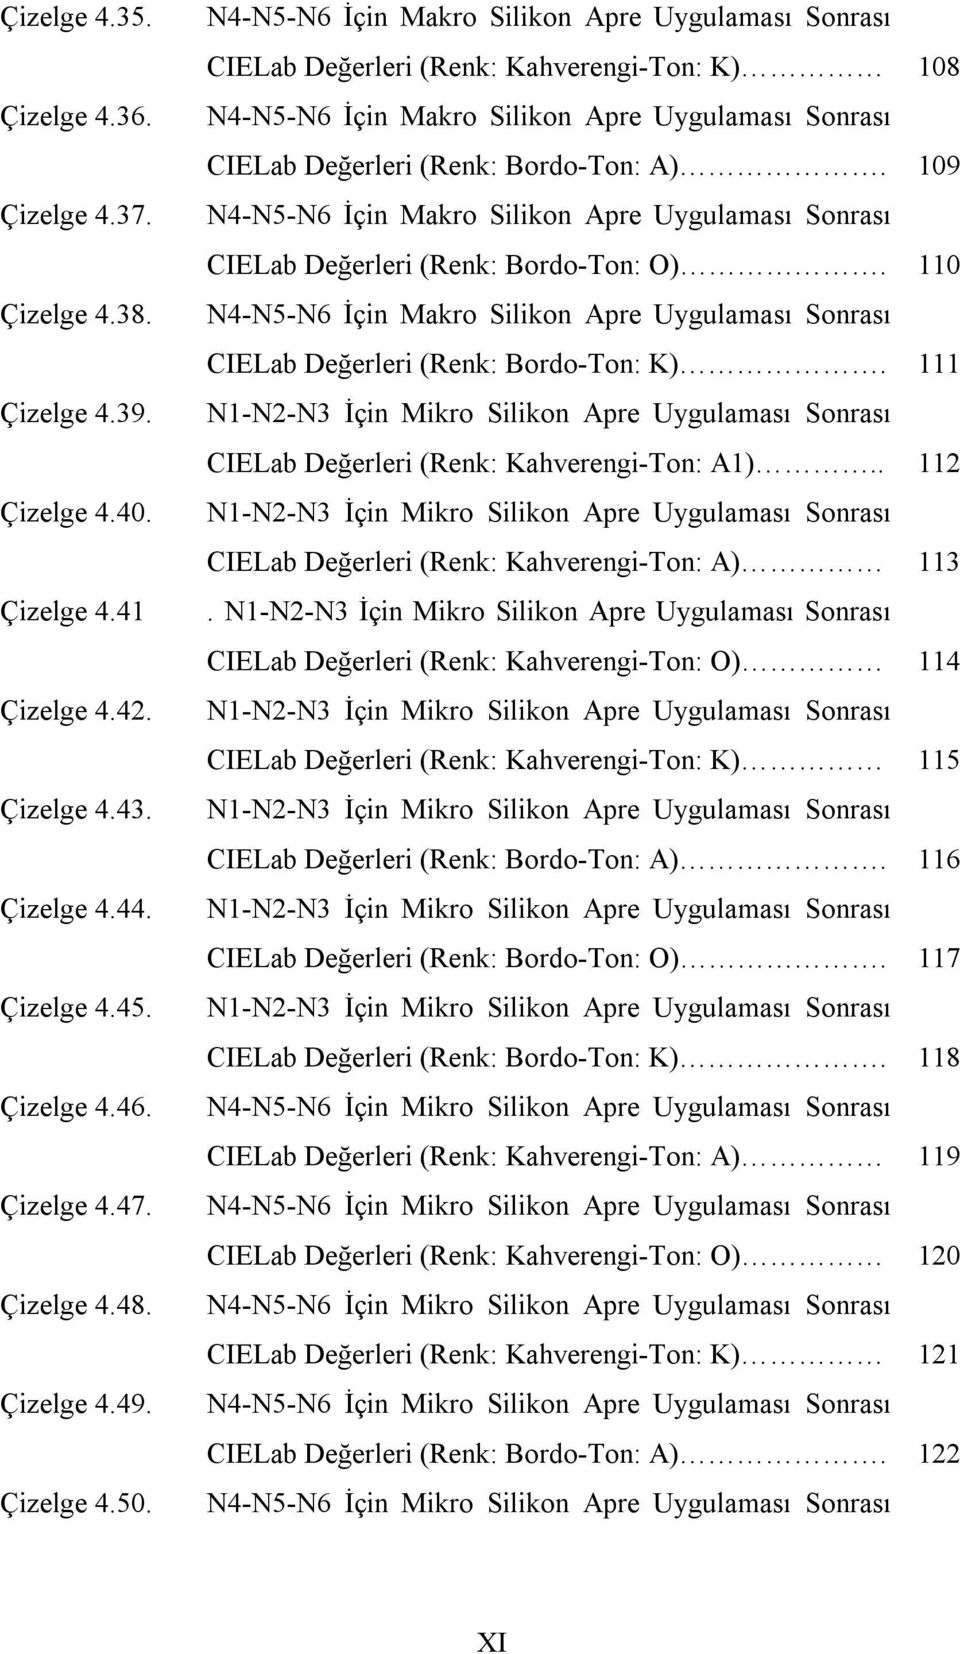 N4-N5-N6 İçin Makro Silikon Apre Uygulaması Sonrası CIELab eğerleri (Renk: Kahverengi-Ton: K) 108 N4-N5-N6 İçin Makro Silikon Apre Uygulaması Sonrası CIELab eğerleri (Renk: Bordo-Ton: A).